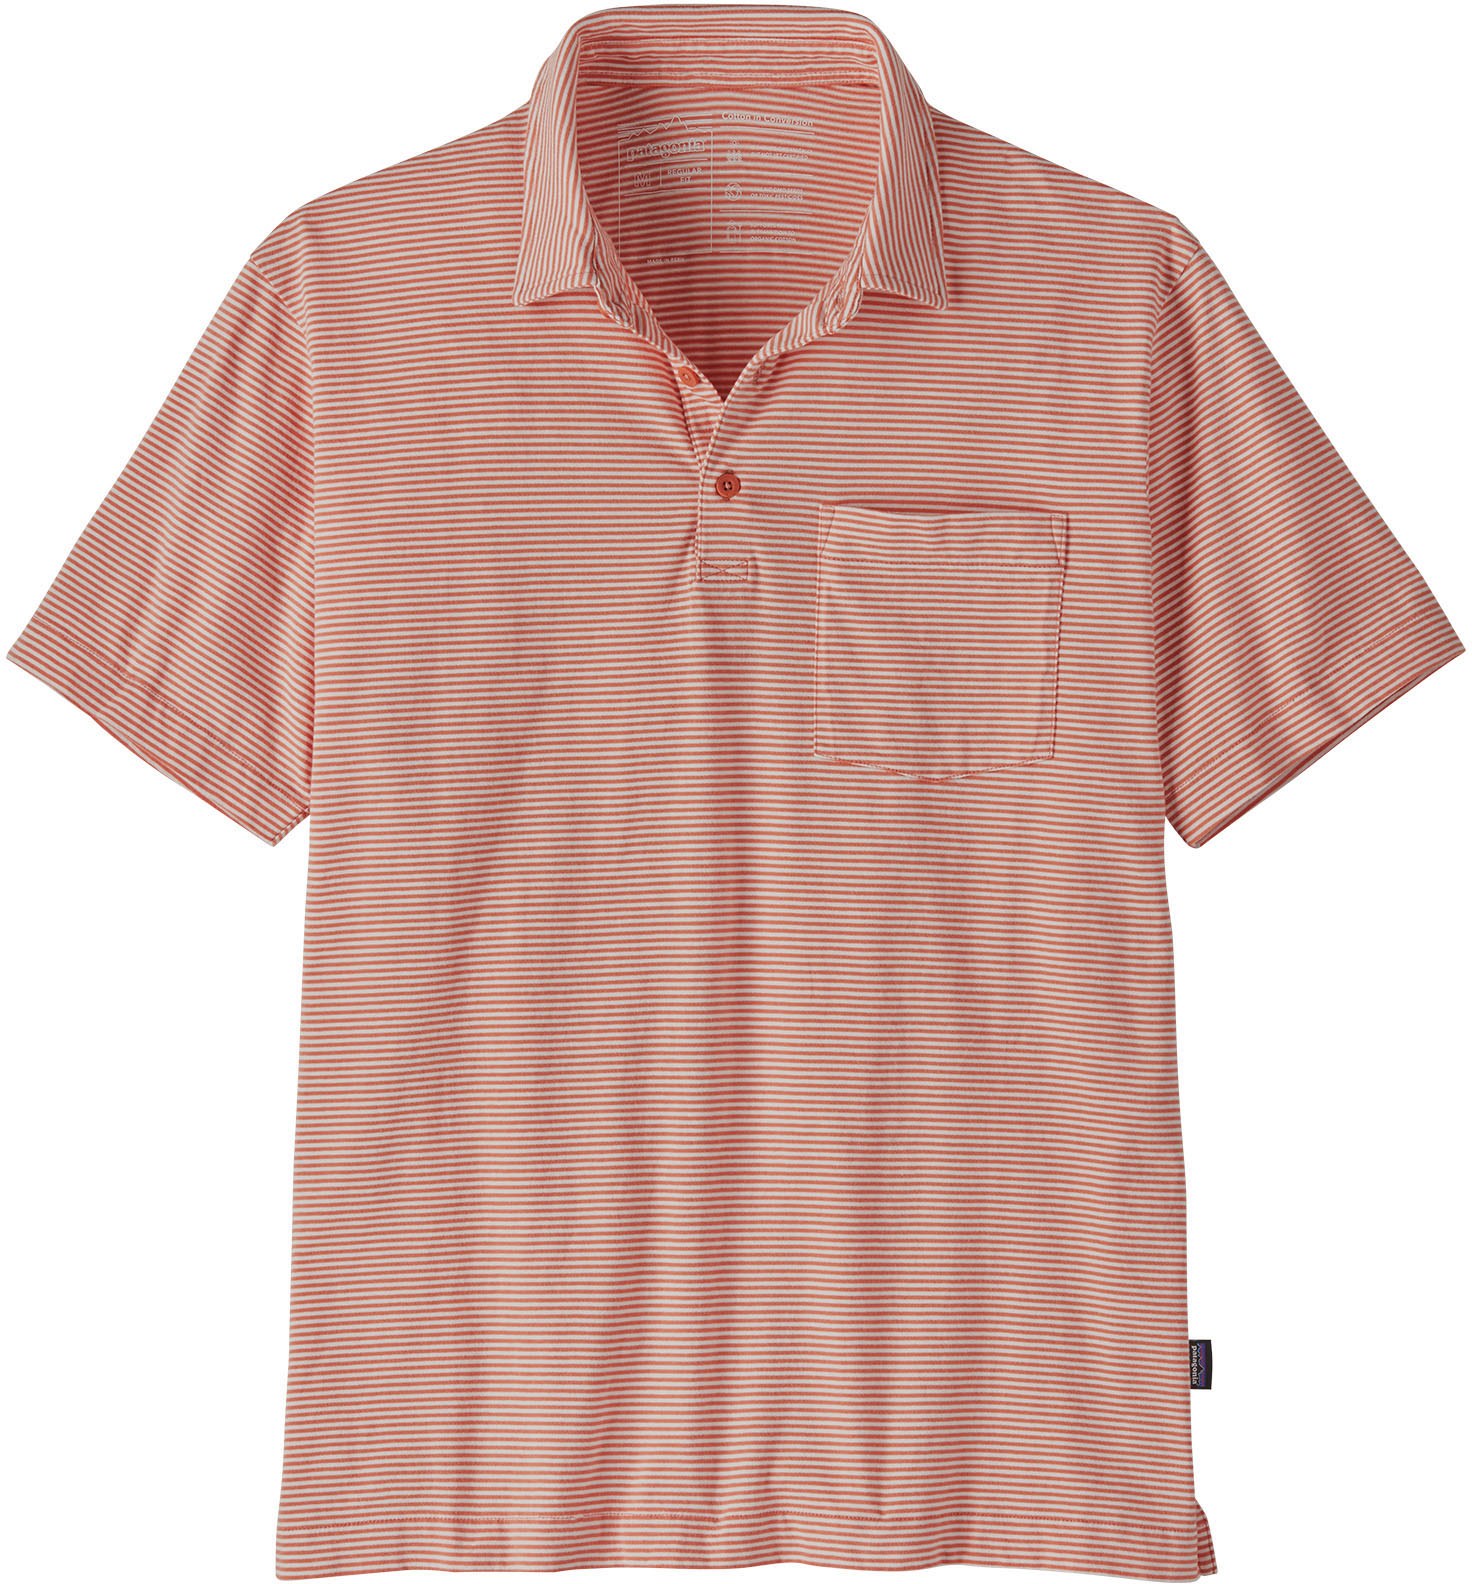 Легкая рубашка-поло из хлопка, мужская Patagonia, розовый